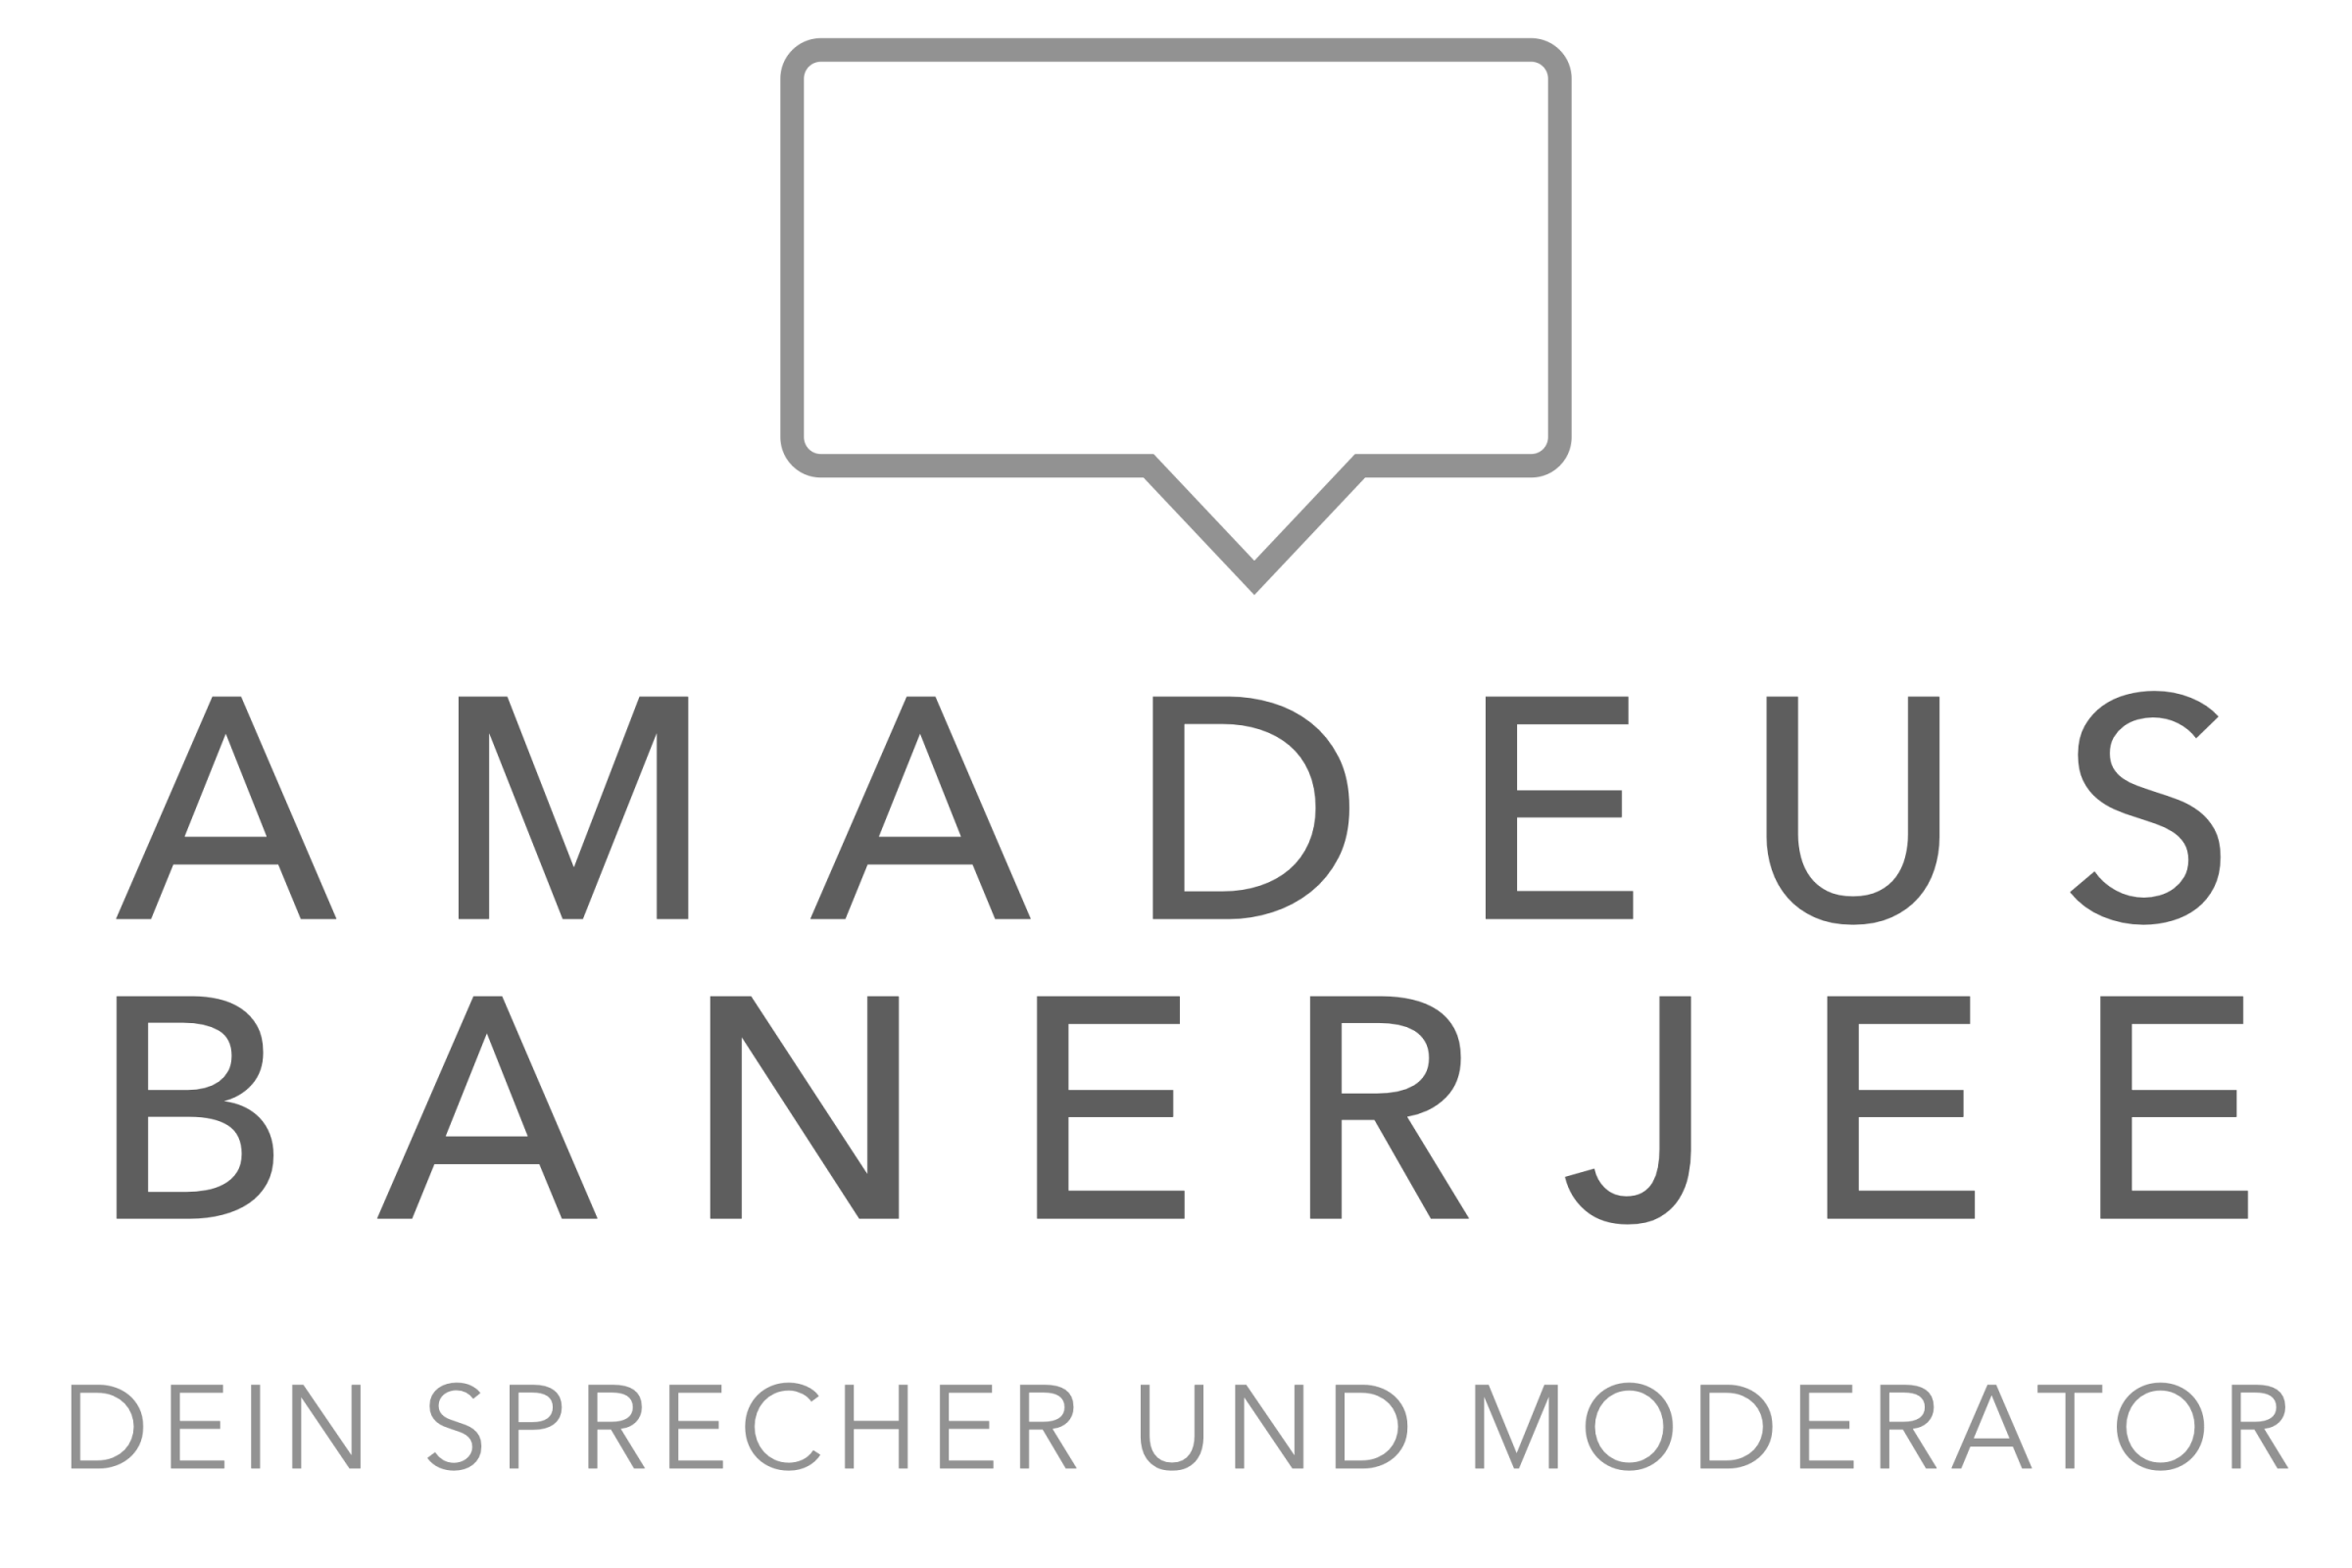 Amadeus Banerjee - Dein Sprecher und Moderator